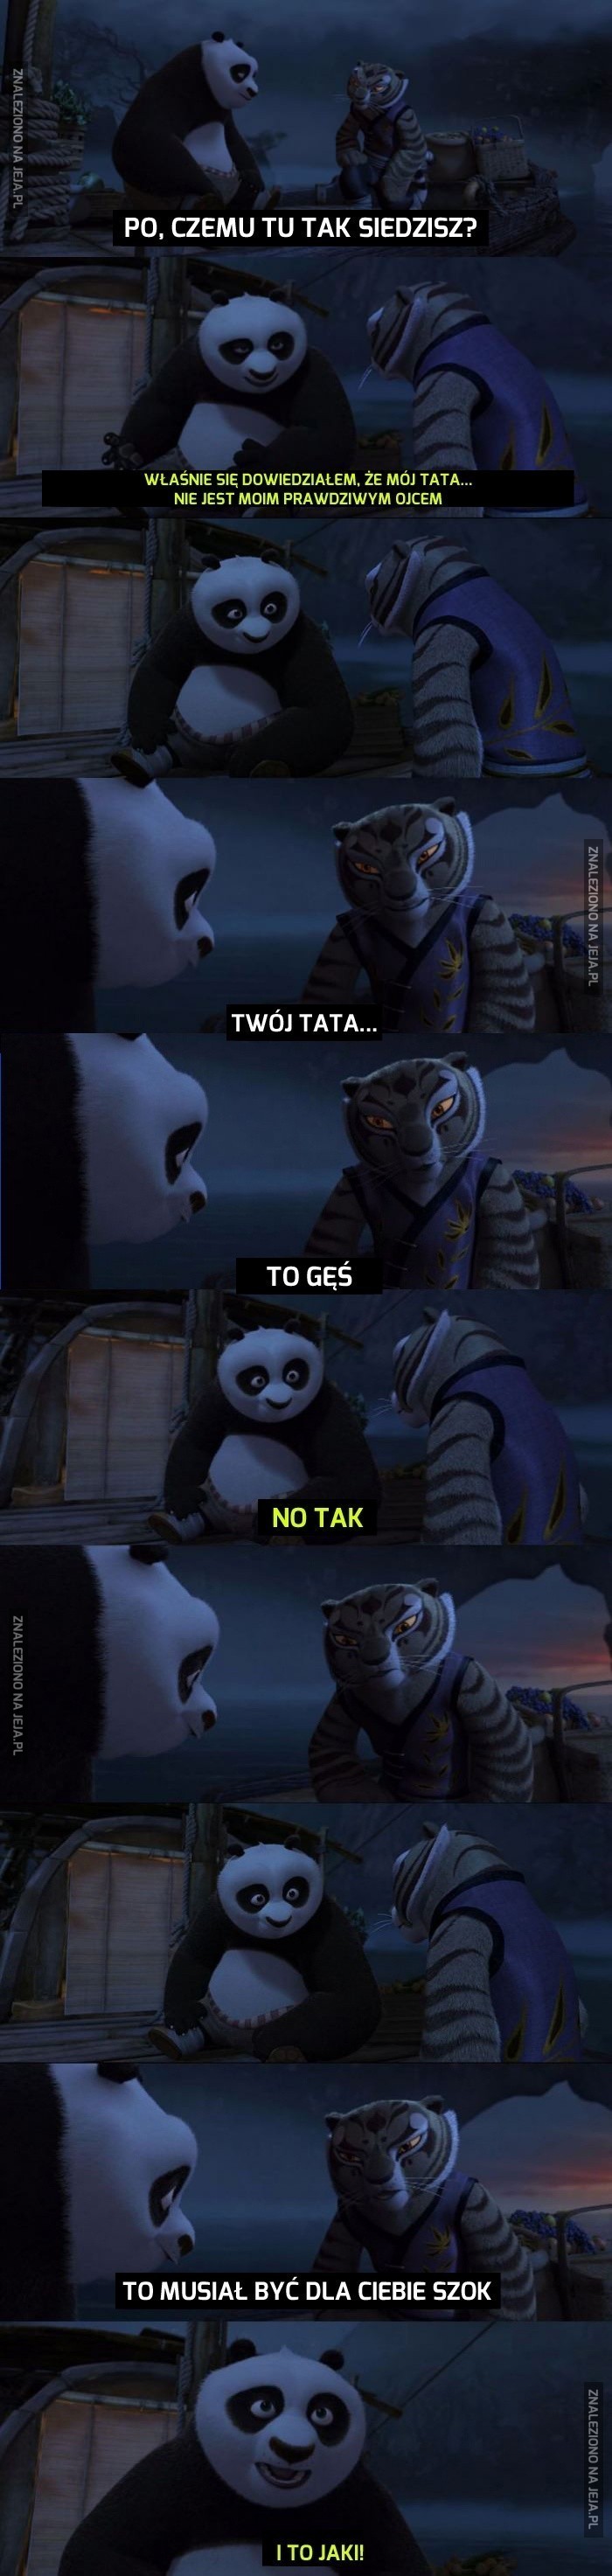 Pandy nie są zbyt bystre